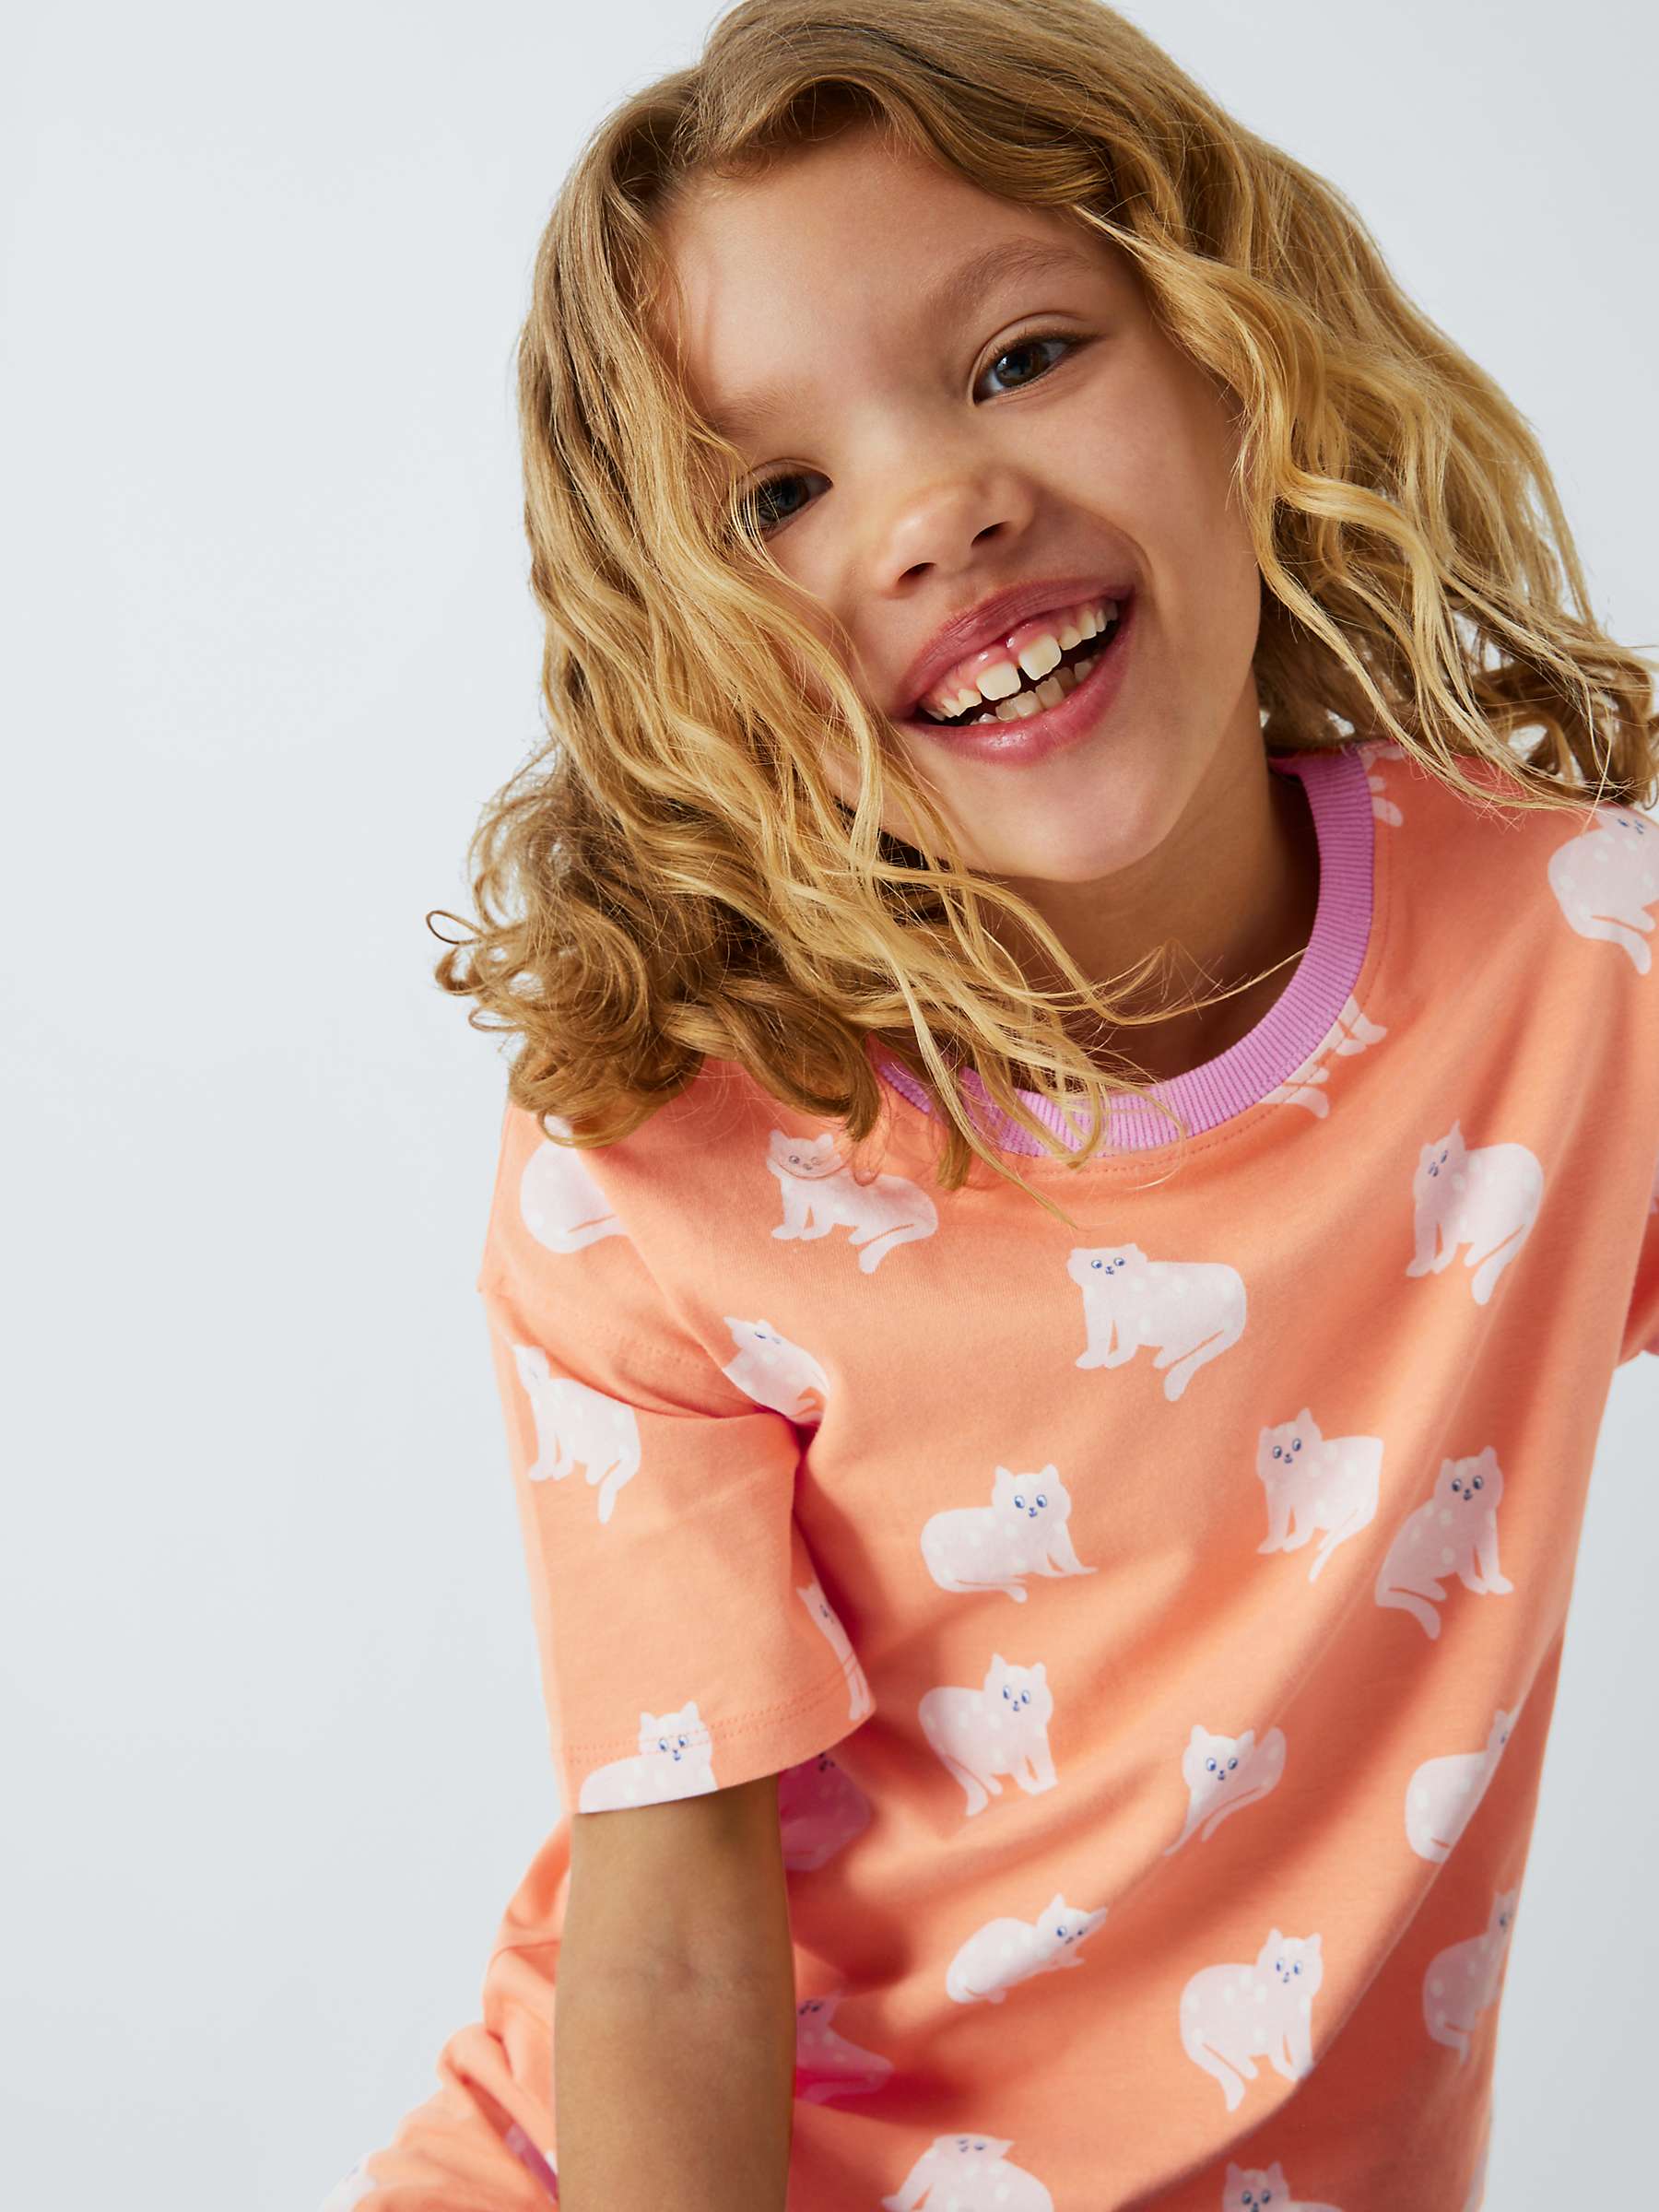 Buy John Lewis ANYDAY Kids' Cat Print Shorts Pyjamas, Orange Online at johnlewis.com